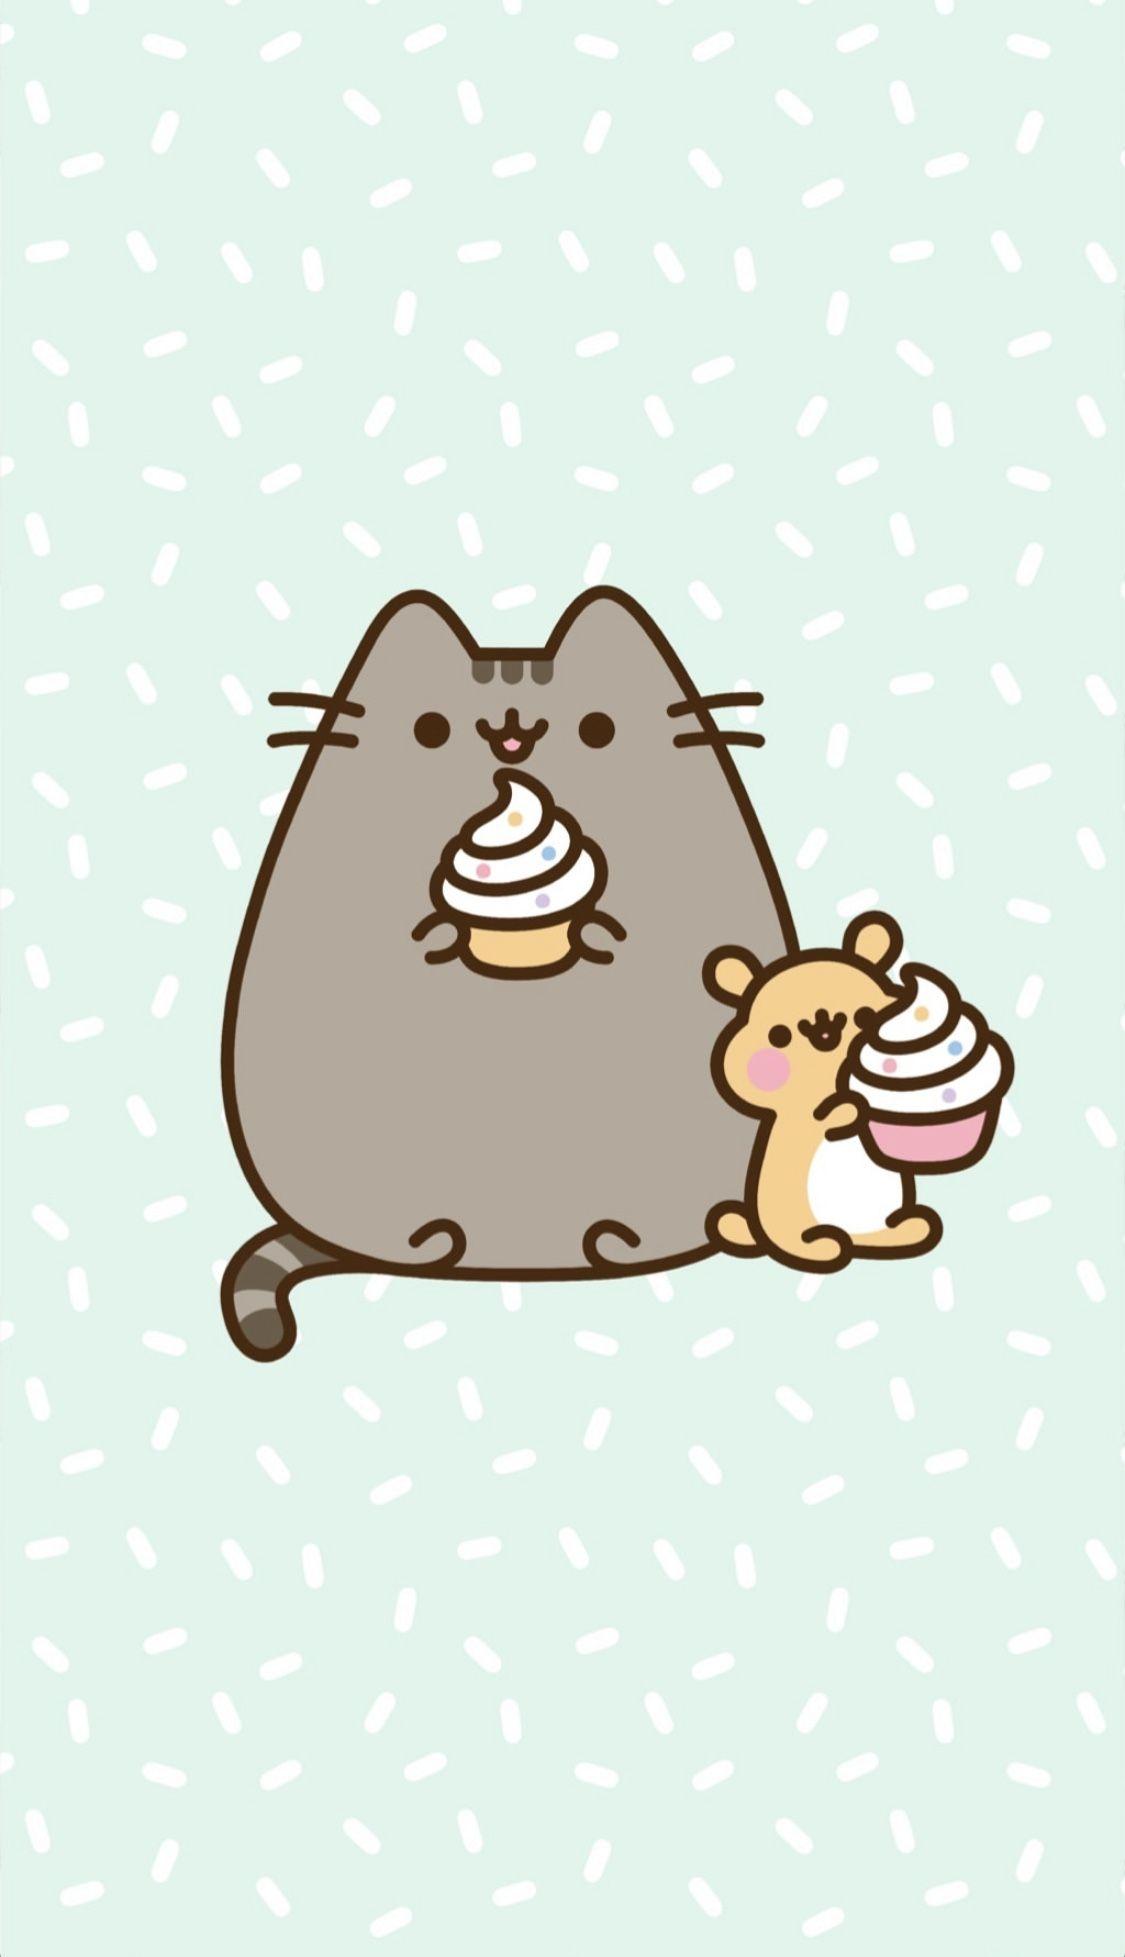 Cute Pusheen Cat Wallpapers - Top Free Cute Pusheen Cat Backgrounds - WallpaperAccess